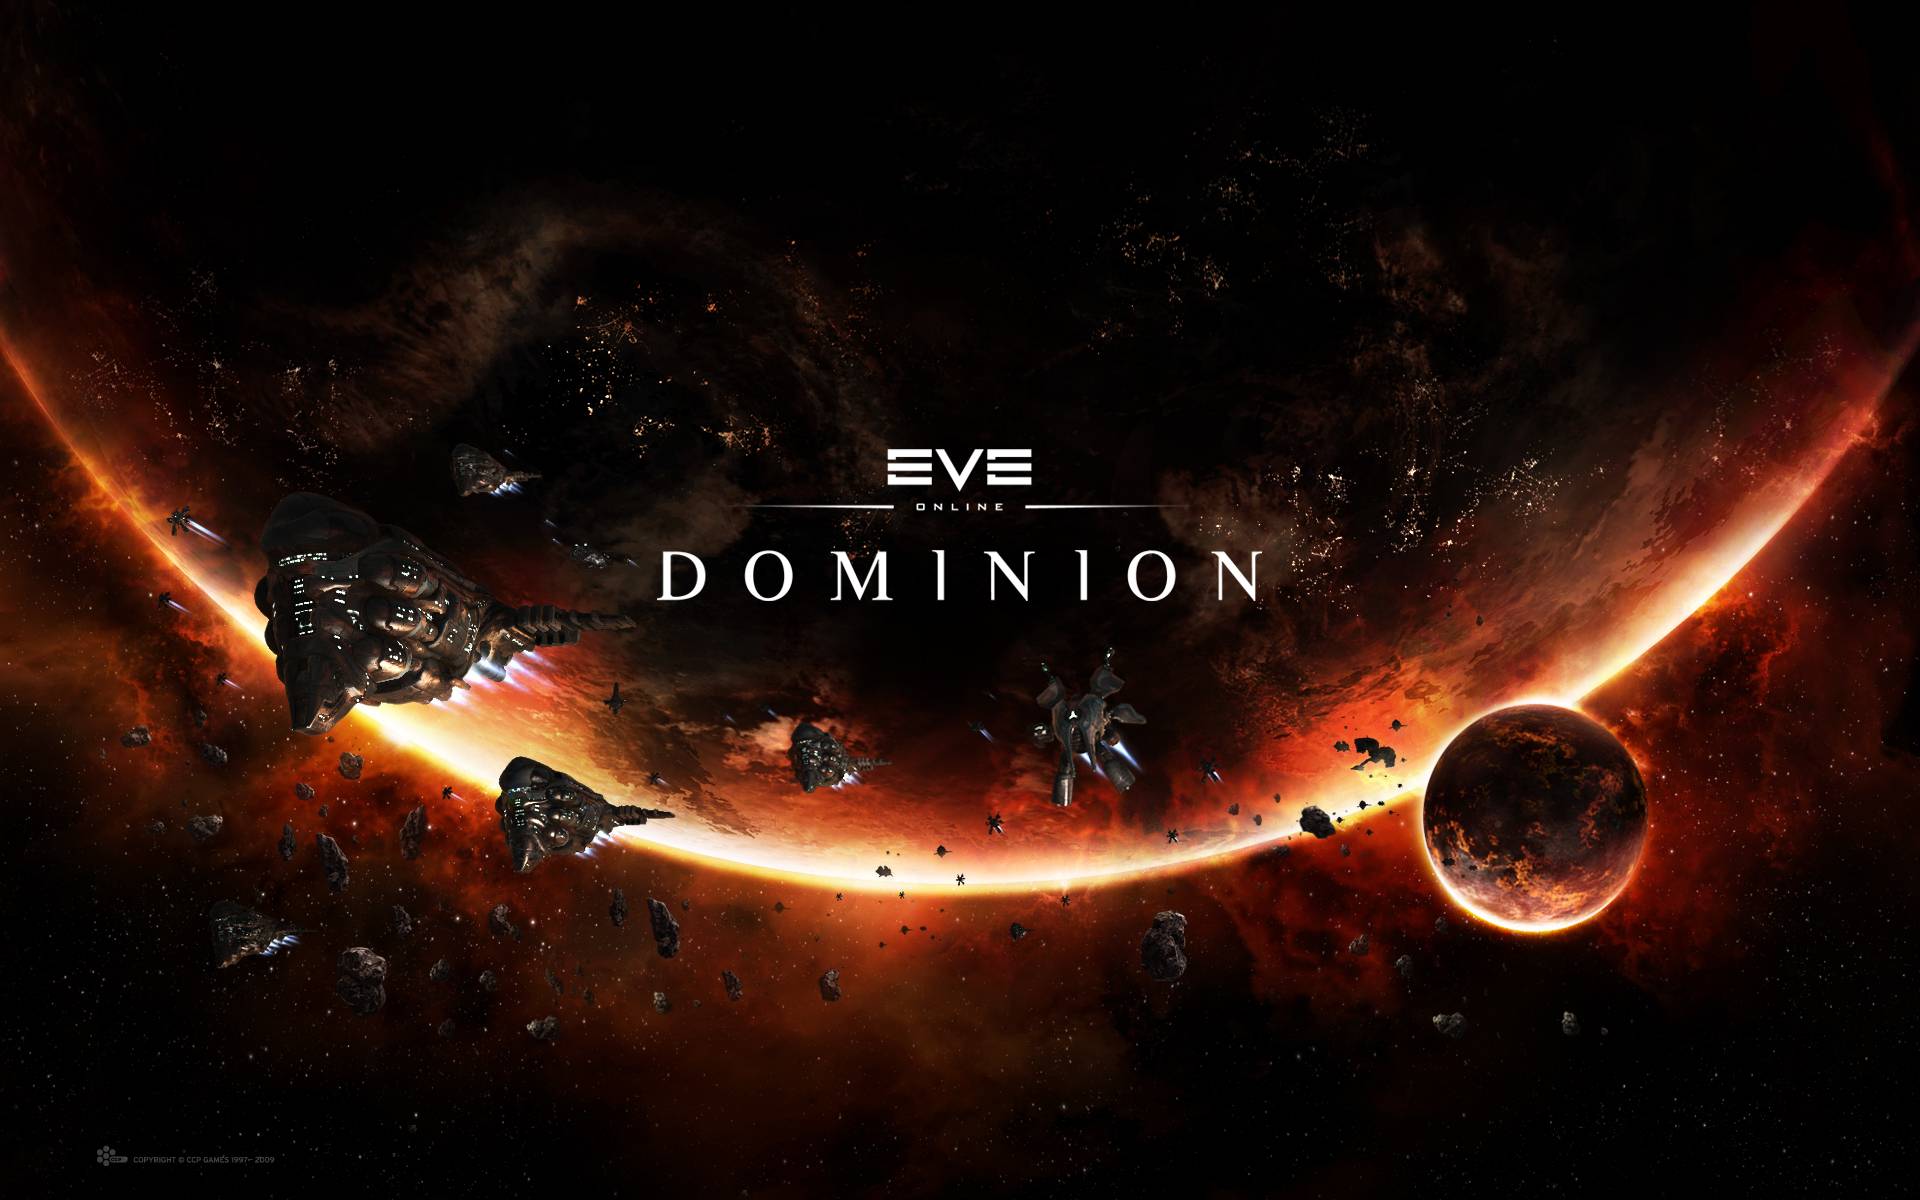 Eve Online Wallpaper